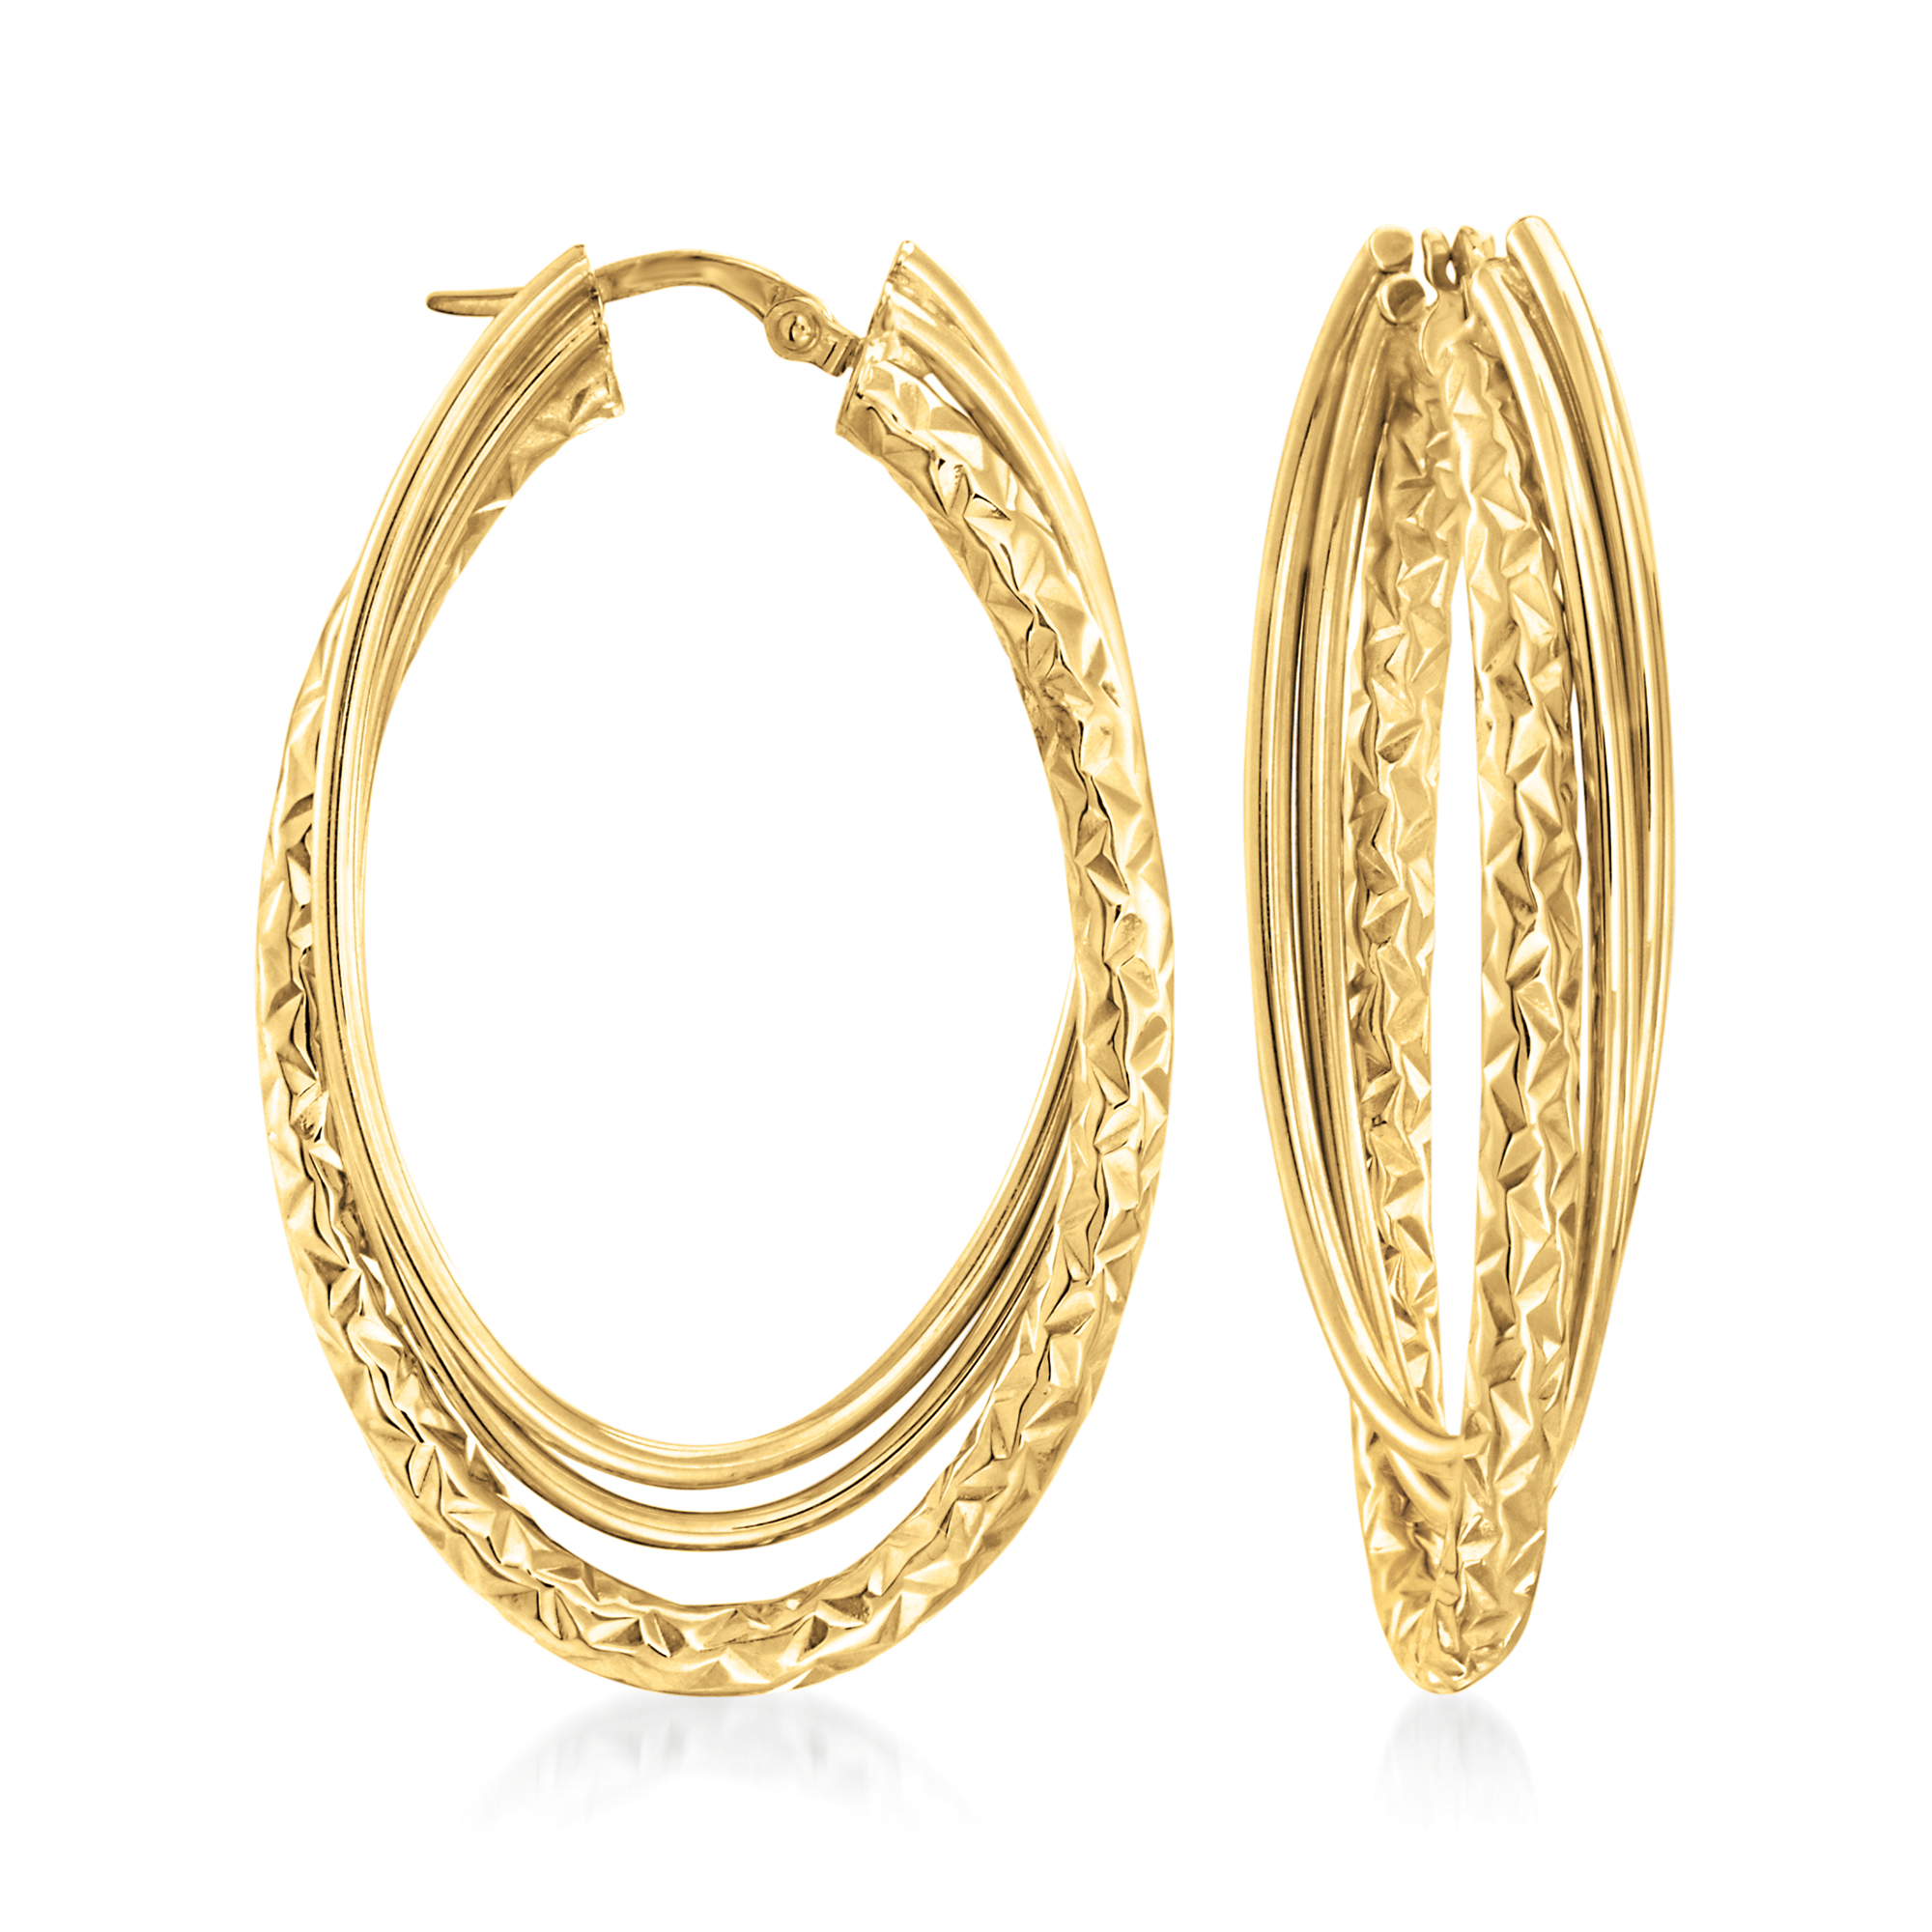 Italian 14kt Yellow Gold Triple-Hoop Earrings. 1 3/4